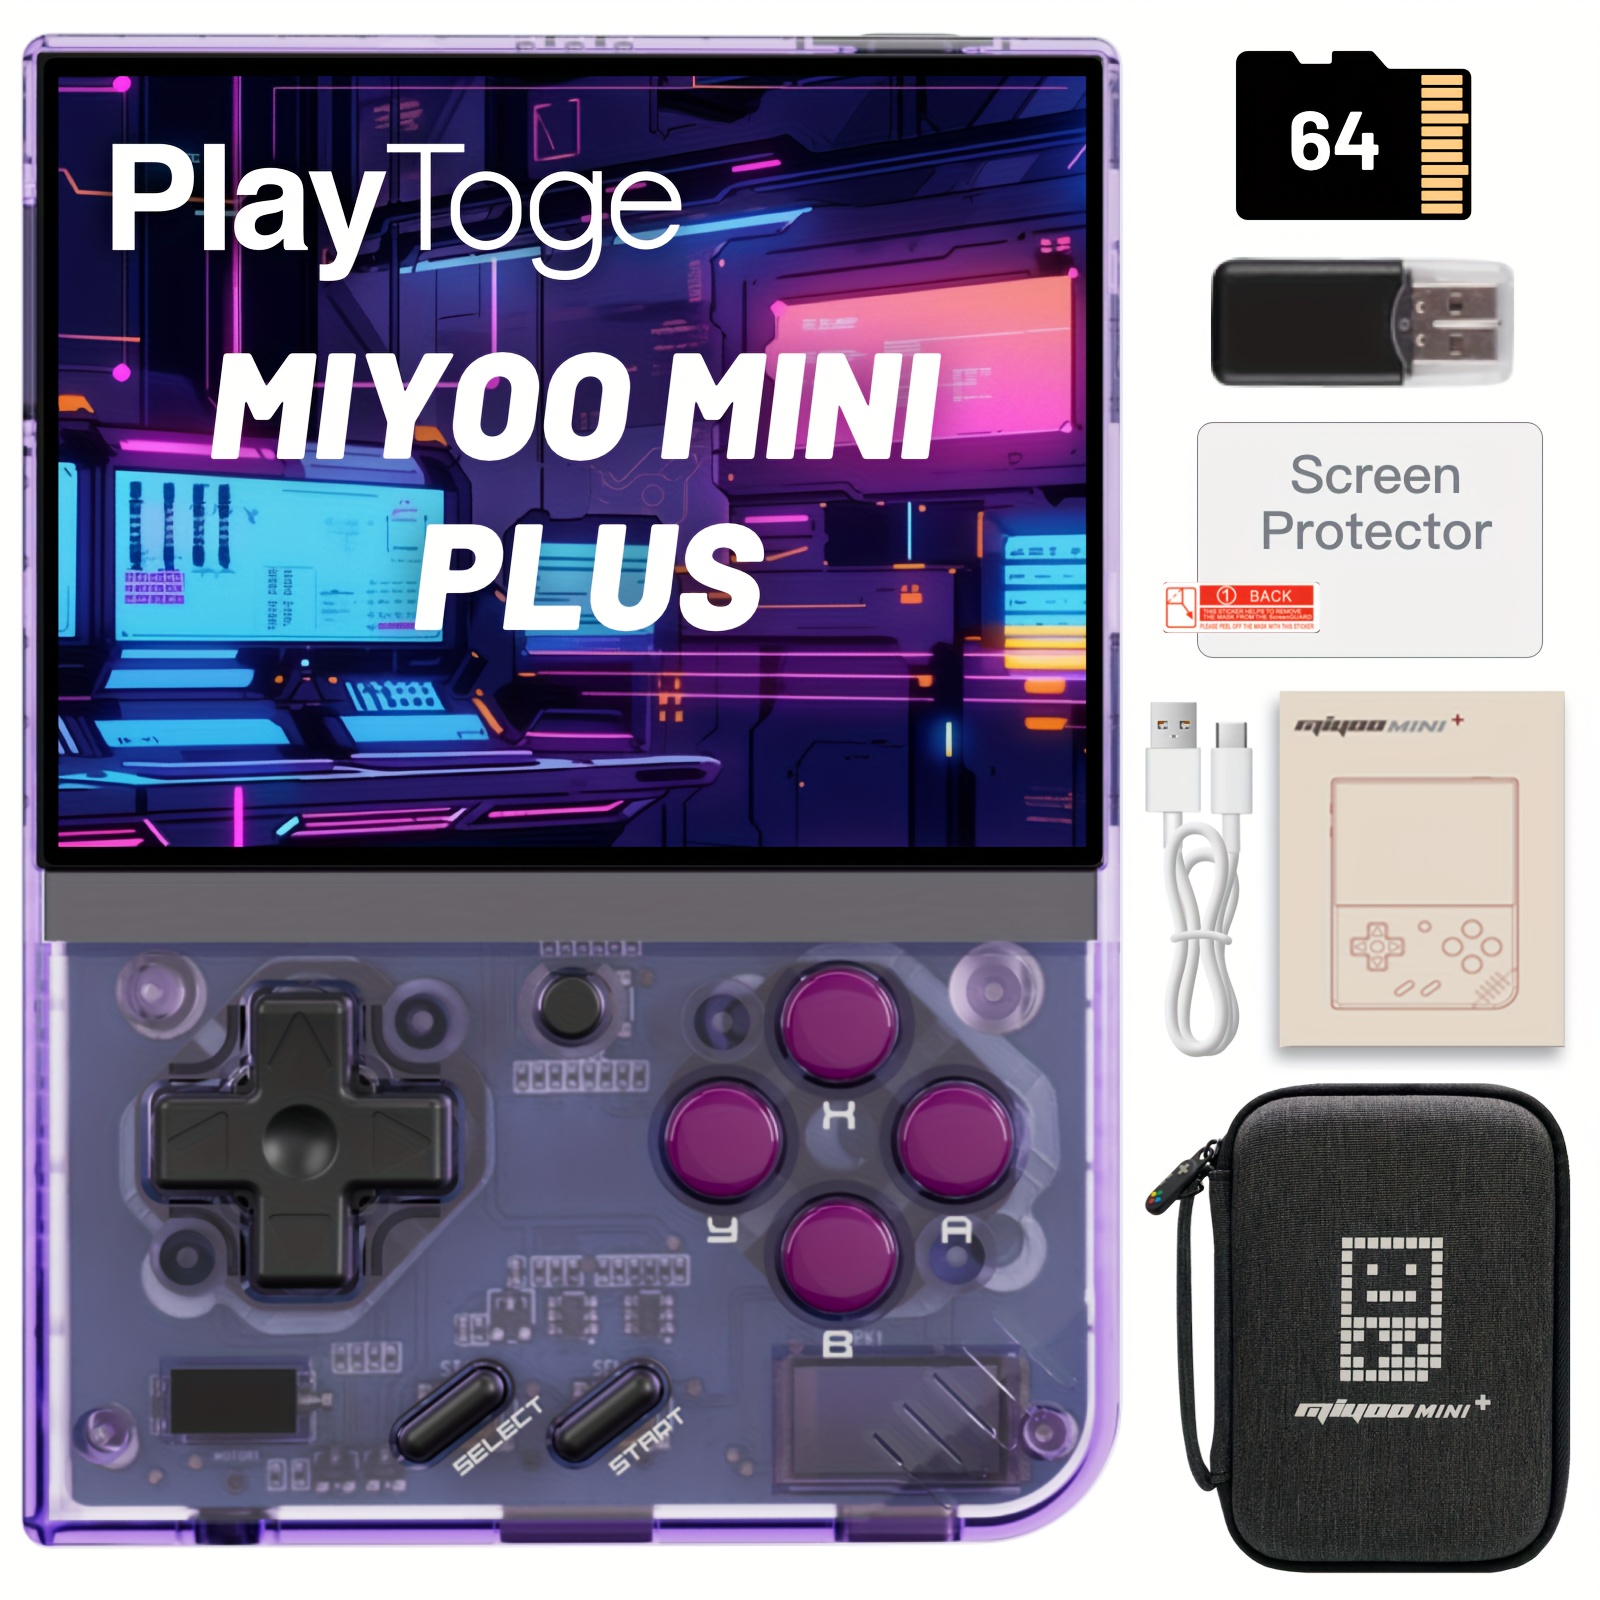 miyoo mini plus +64GB